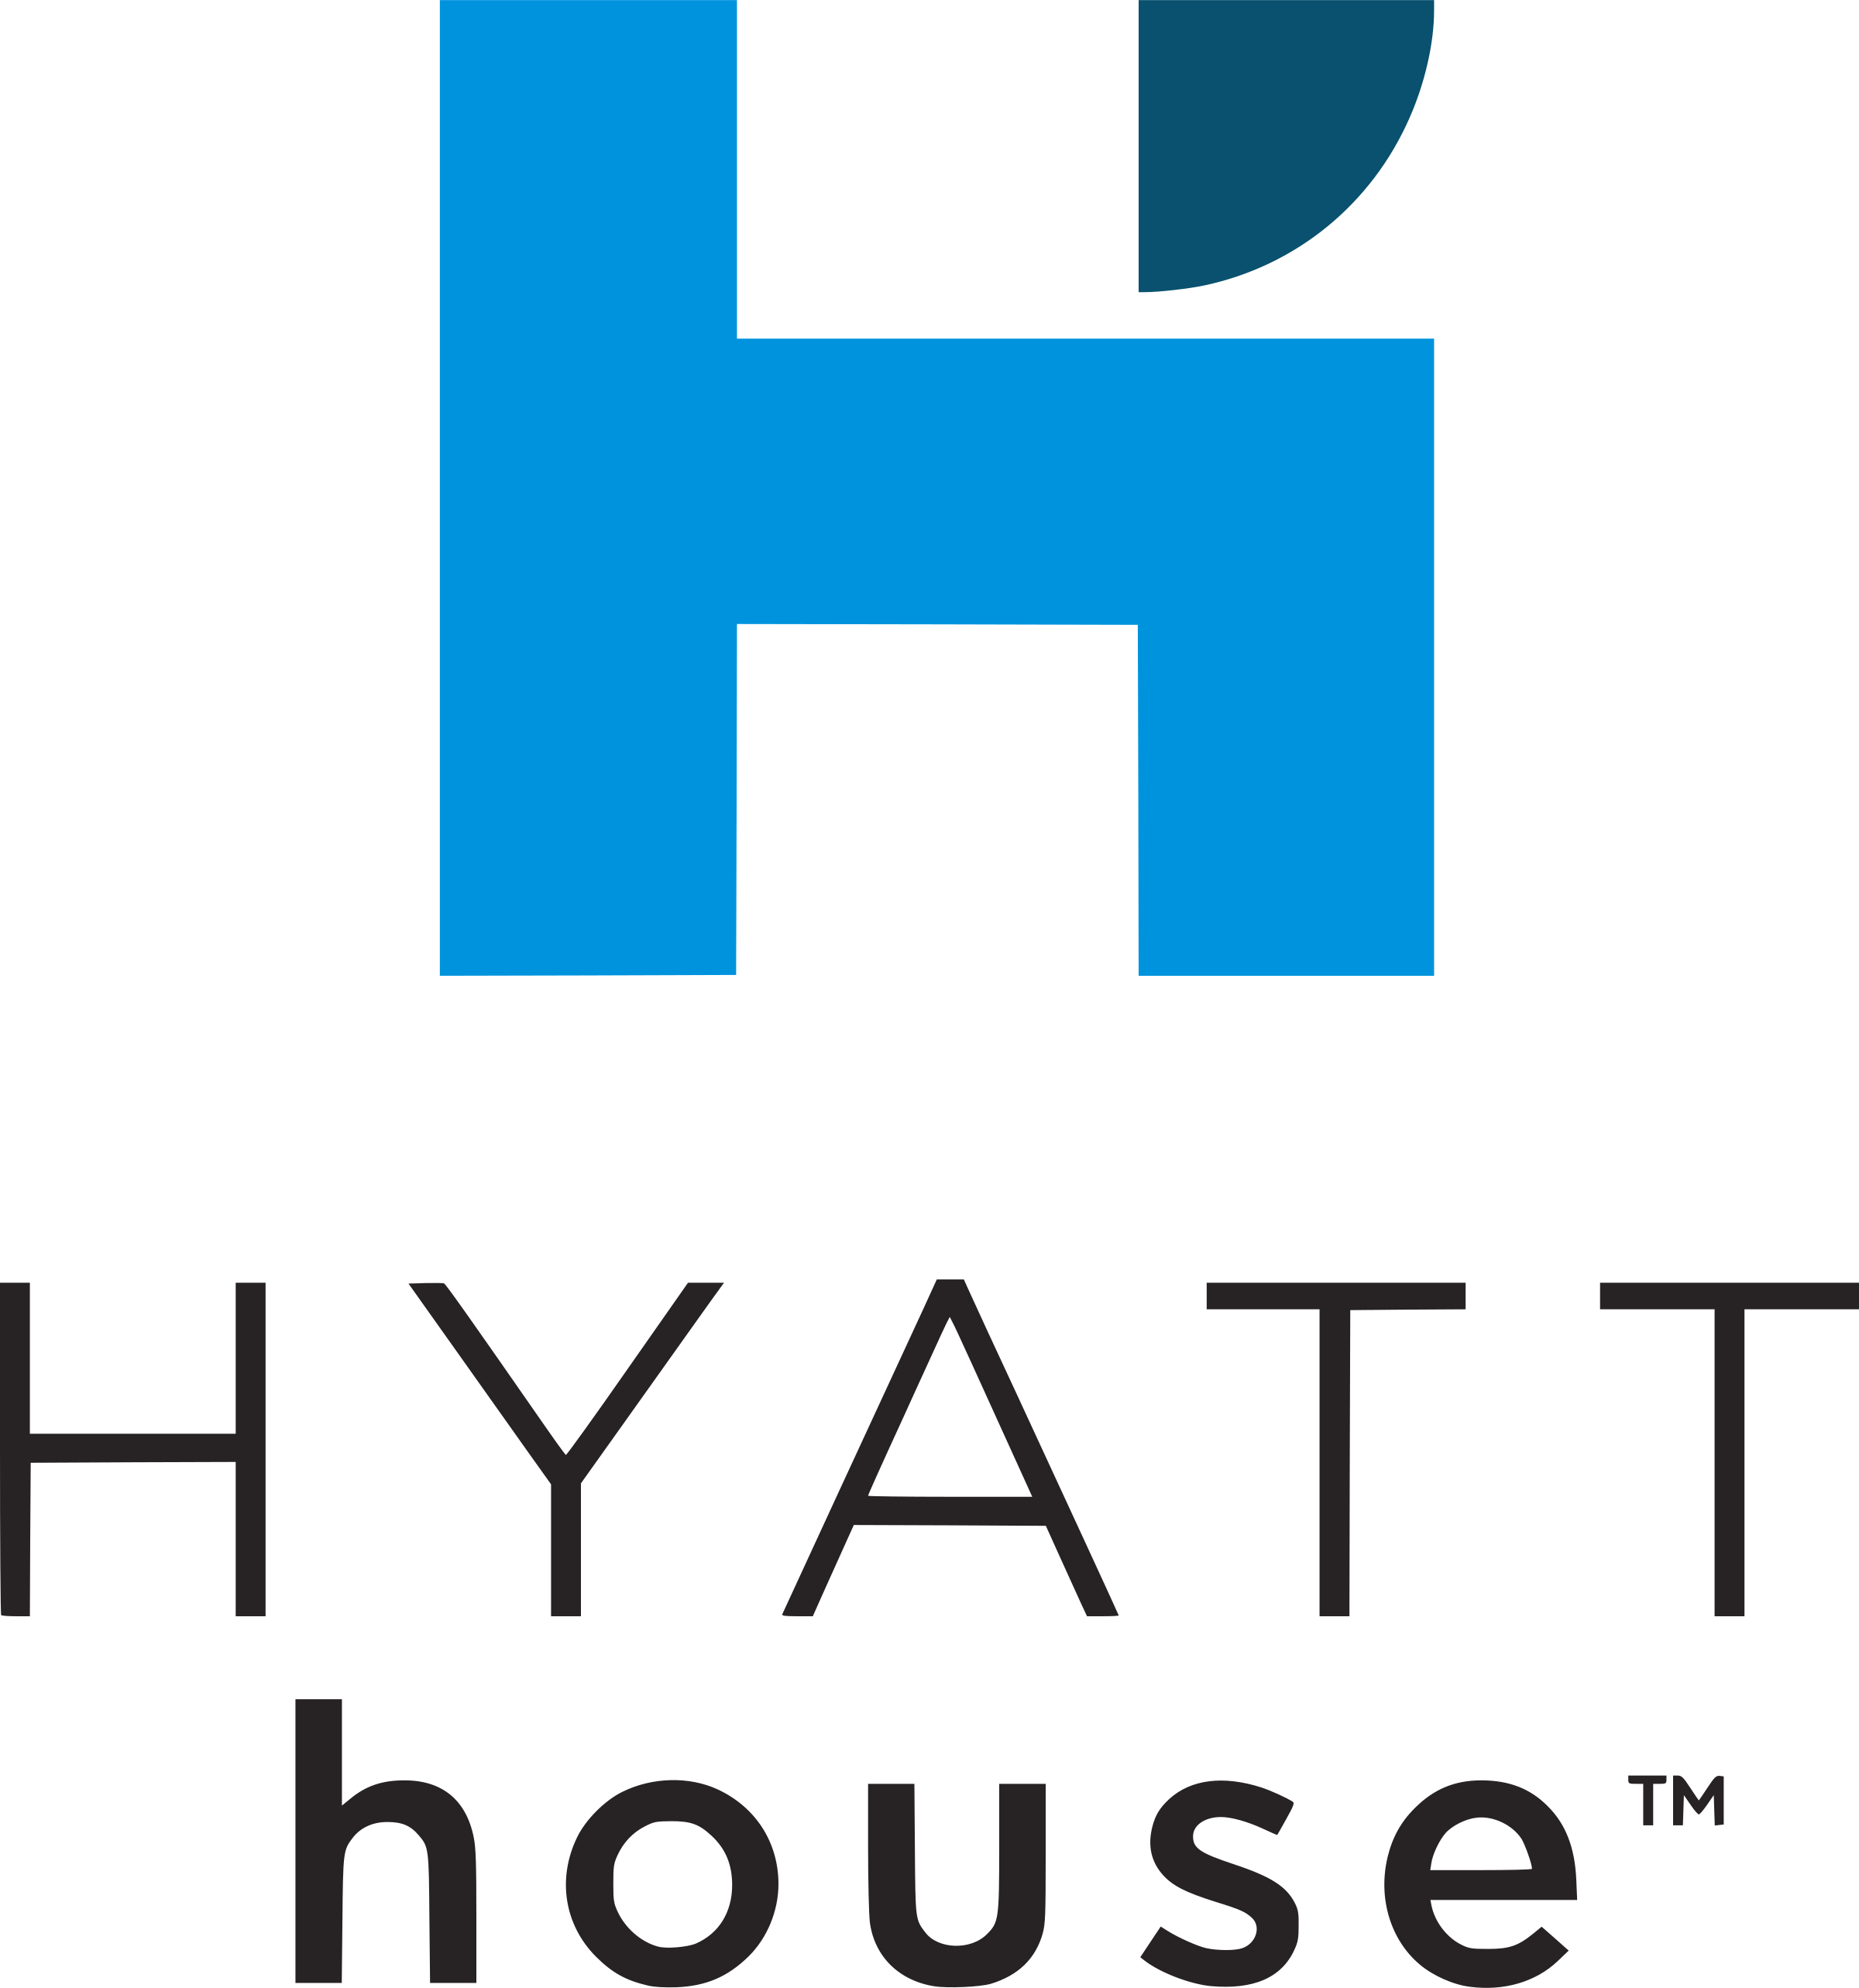 Hyatt House